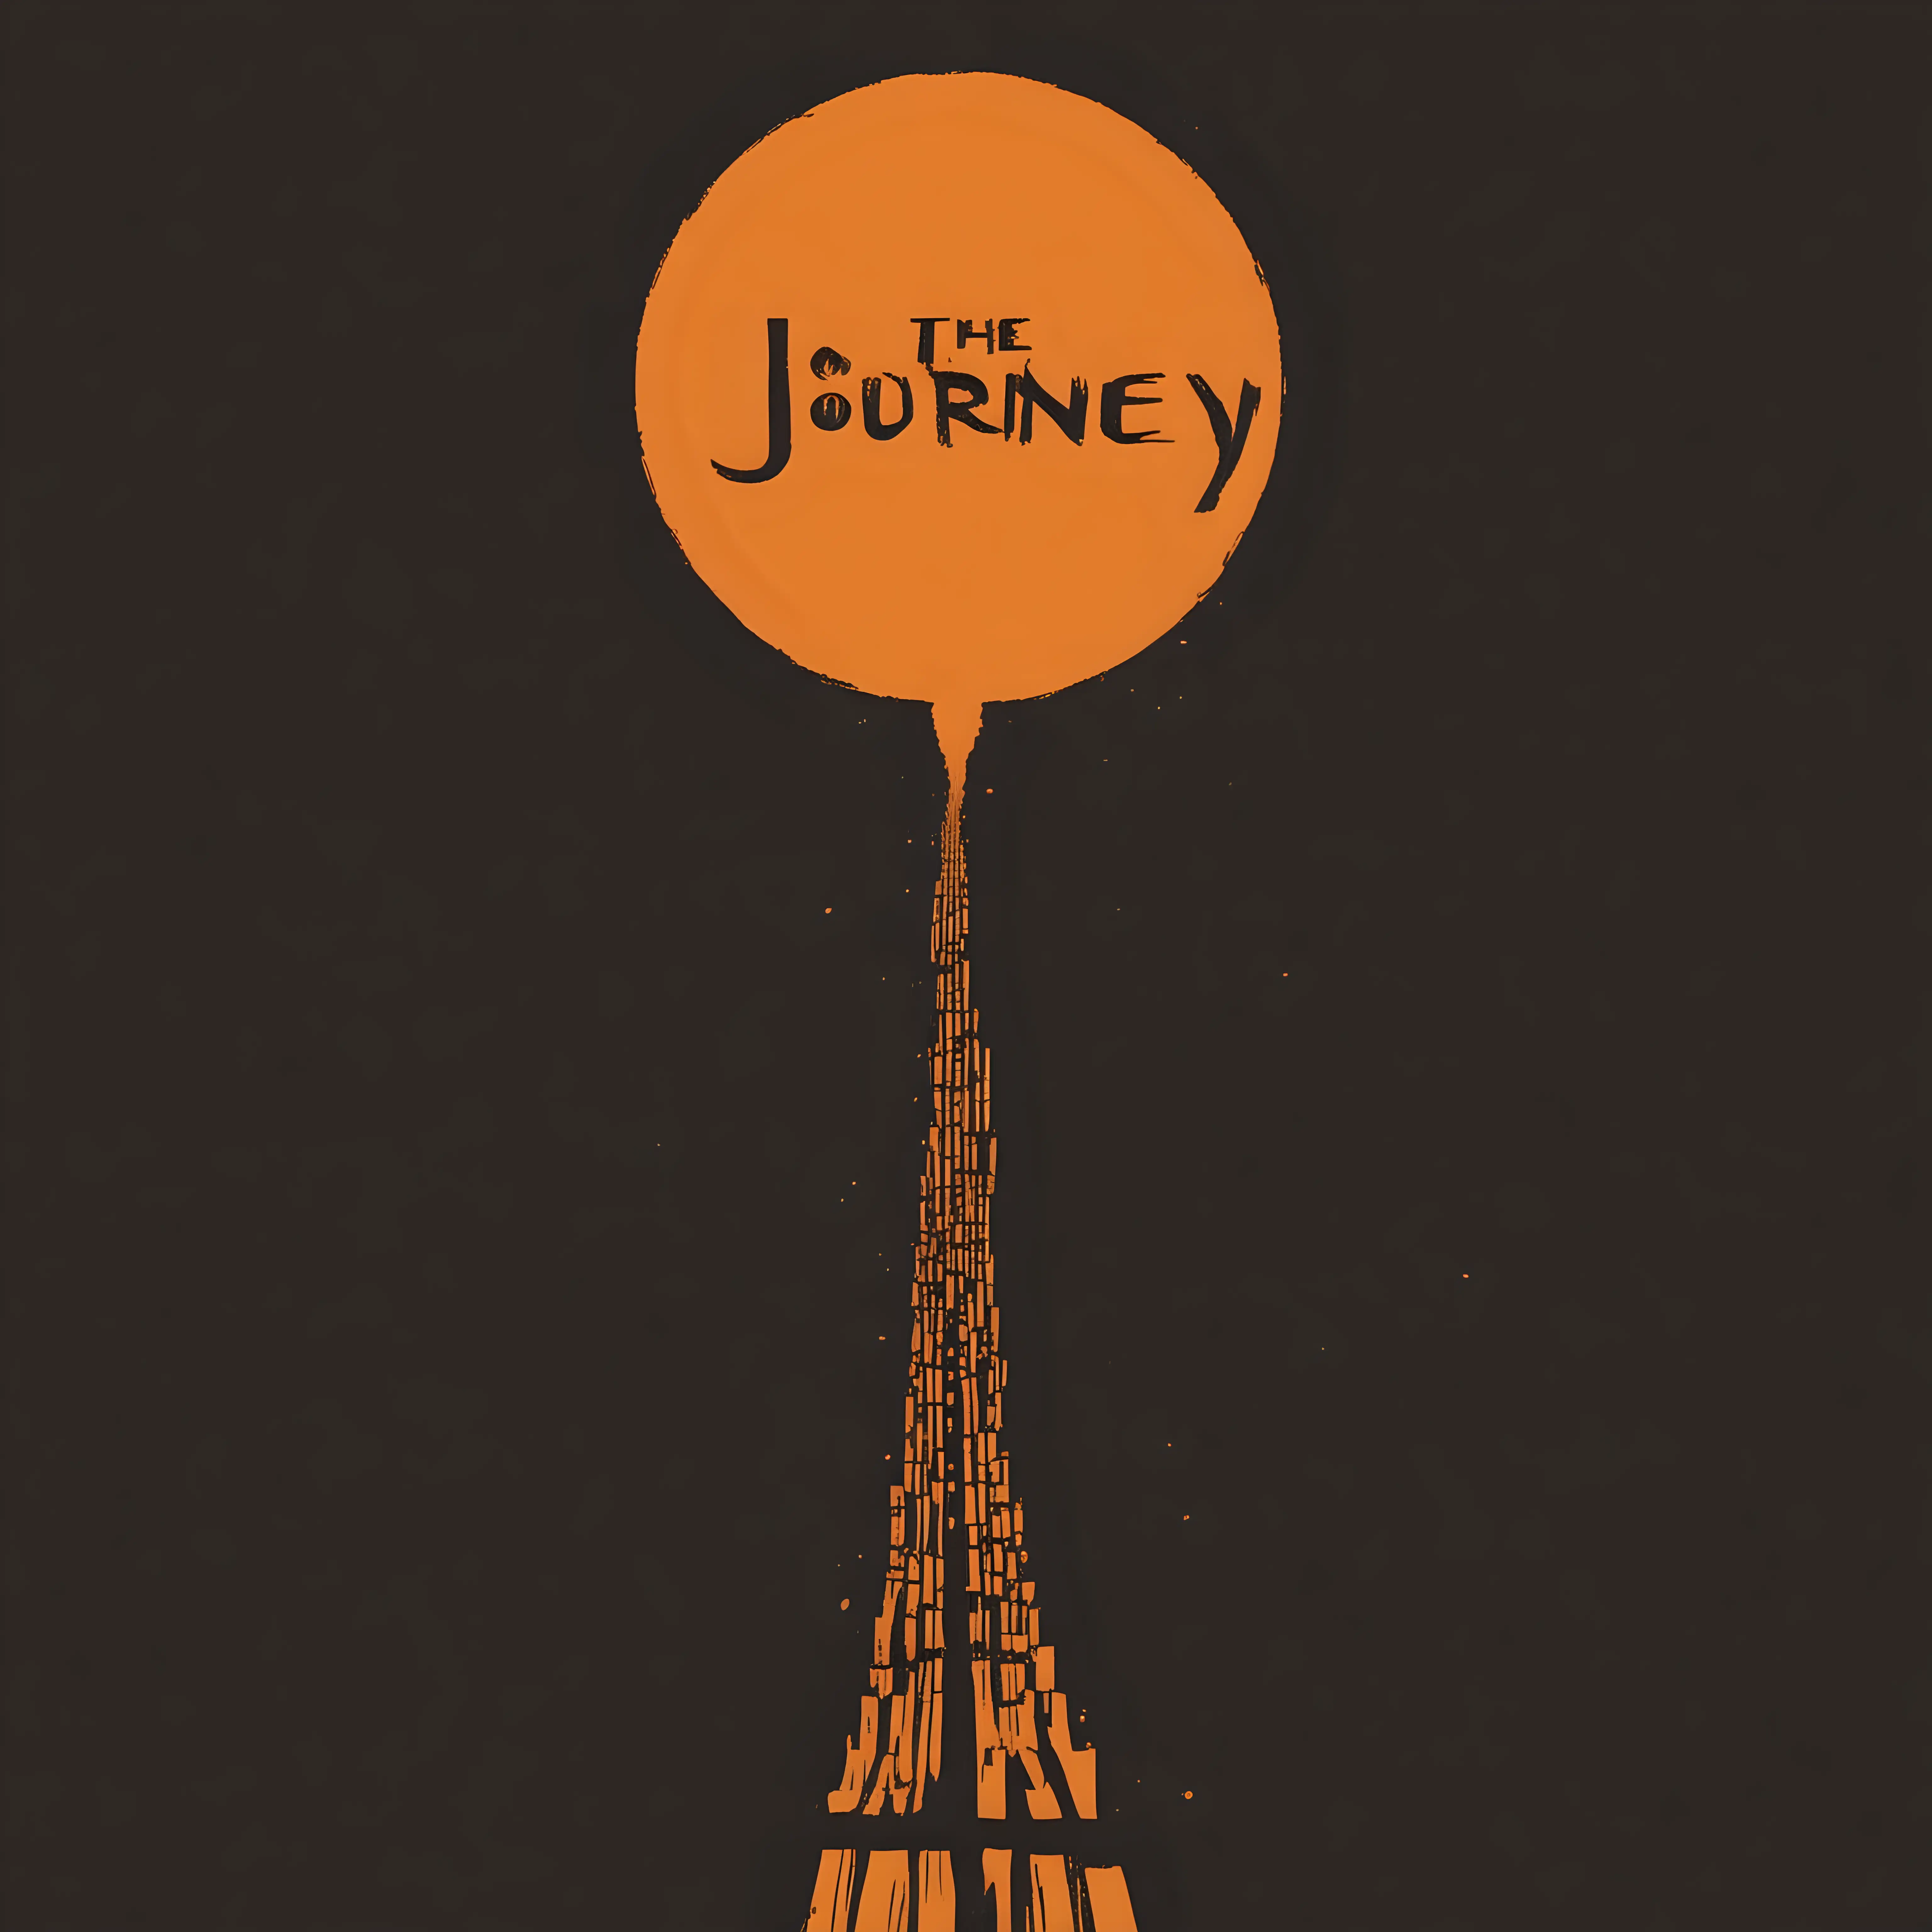 Genera la portada de un single de una banda sonora titulada 'El viaje' que represente el viaje de la vida, con el estilo de Saul Bass